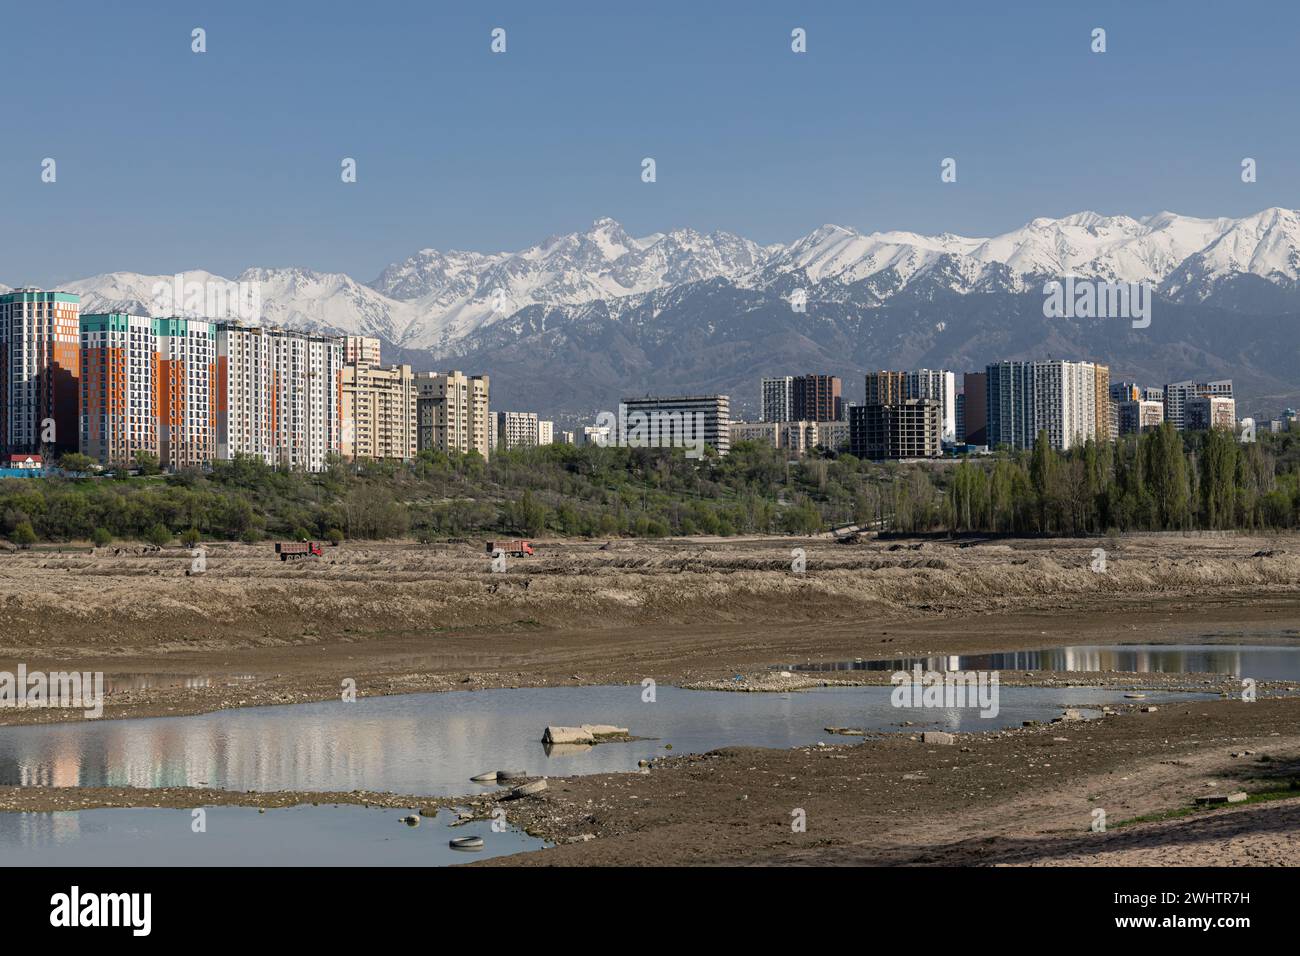 Serbatoio di stoccaggio Lago Sayran, Almaty, Kazakistan. Spiaggia di sabbia di Empty City con laghetto drenato. Edifici residenziali e alta cima innevata Foto Stock